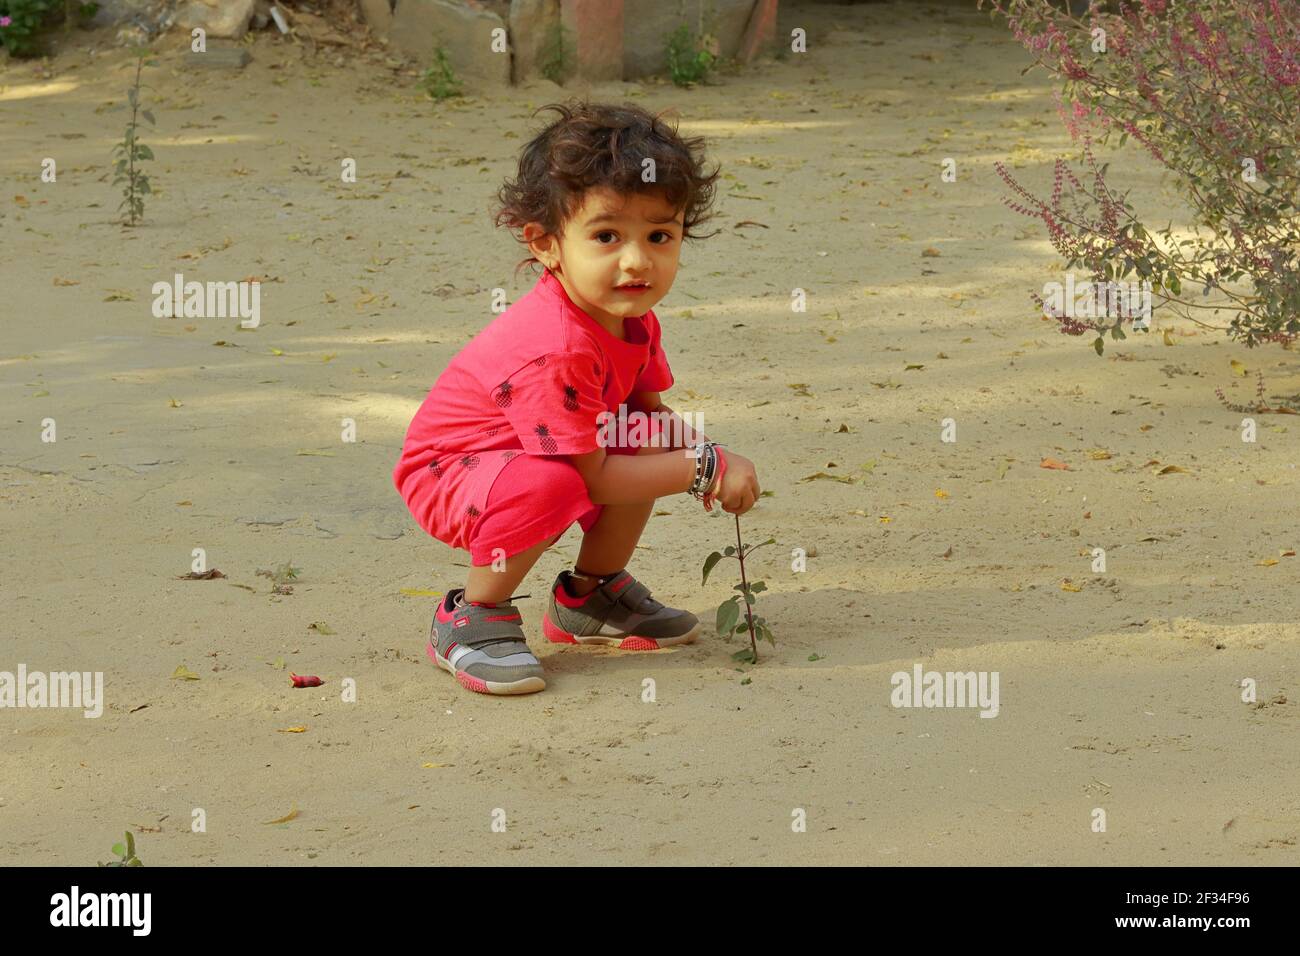 Un bambino di origine indiana rompe la foglia della pianta di medicina ayurvedica Tulsi, india.Concept per le gioie dell'infanzia, i ricordi dell'infanzia, il viso del bambino Foto Stock